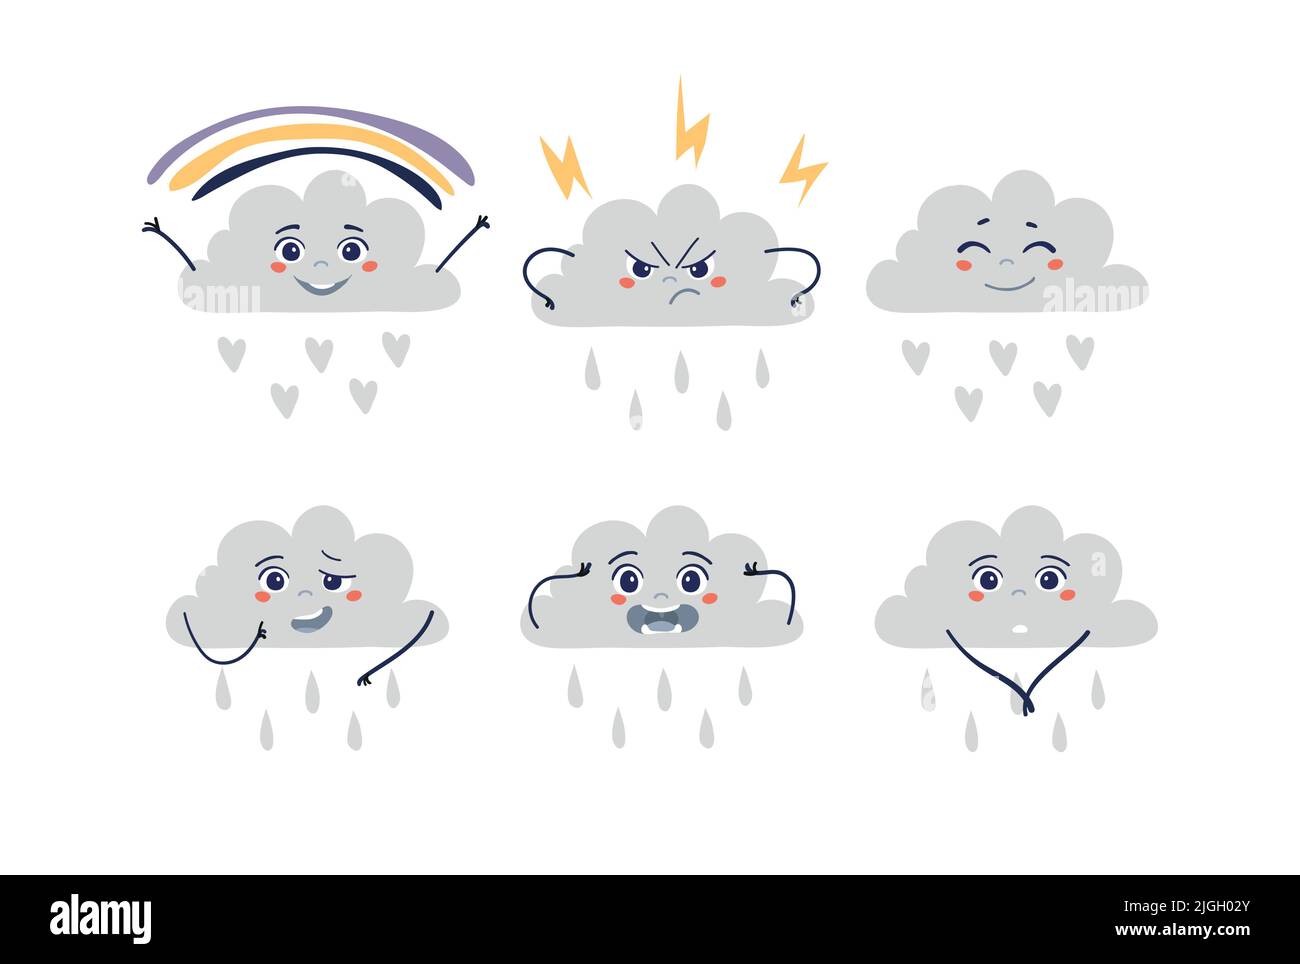 Wolken-Emoticon mit verschiedenen Emotionen, Gewitter, Regenbogen, Regen, niedliches flaches Symbol für Wettervorhersage, Kindergarten, Naturunterricht. Satz von Vektoren Stock Vektor